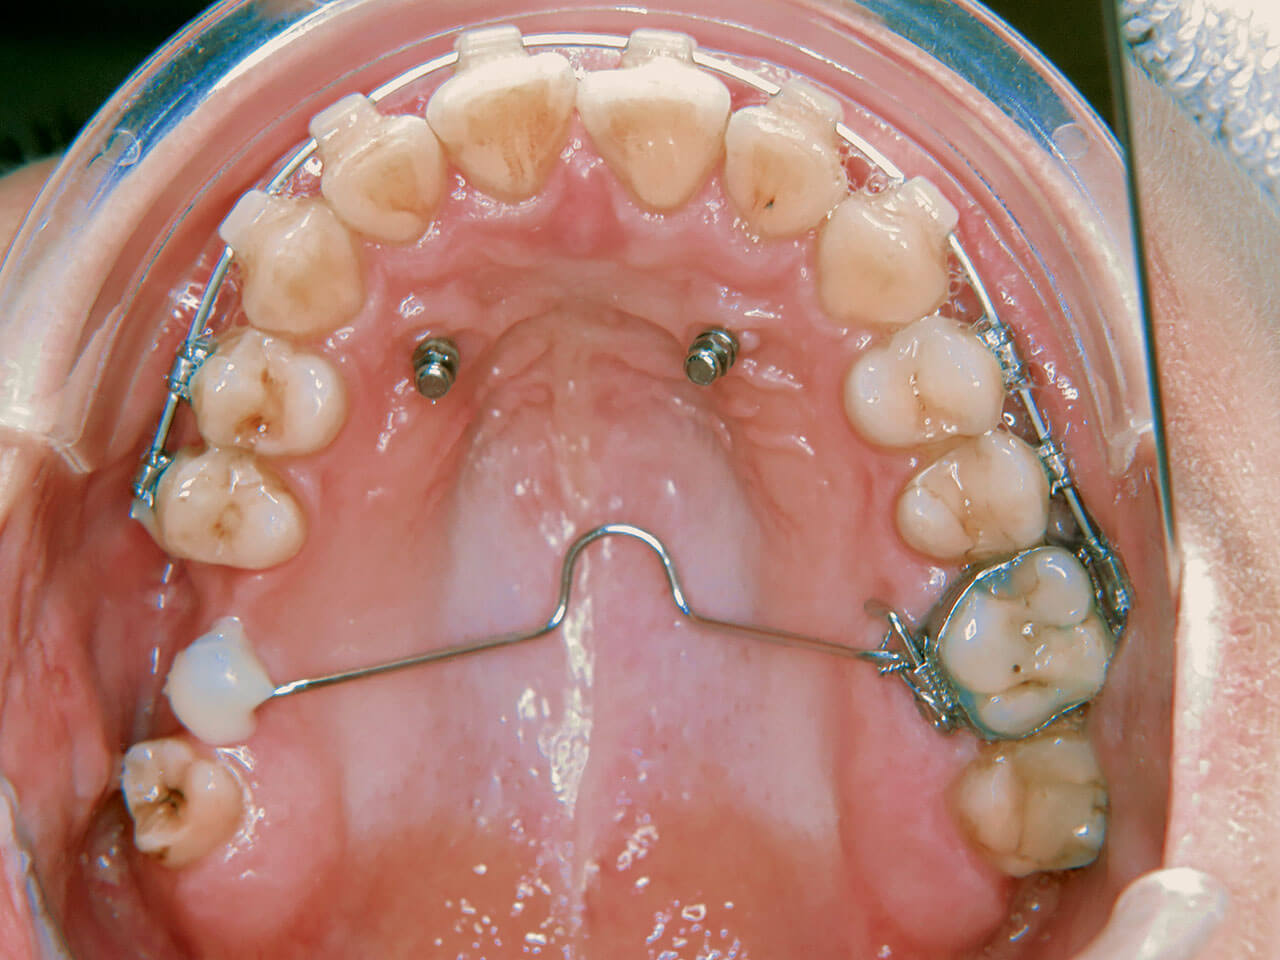 Abb. 4 Oberkieferaufsicht nach erfolgter chirurgischer GNE und Ausformung des Zahnbogens mit TPB zur Retention.